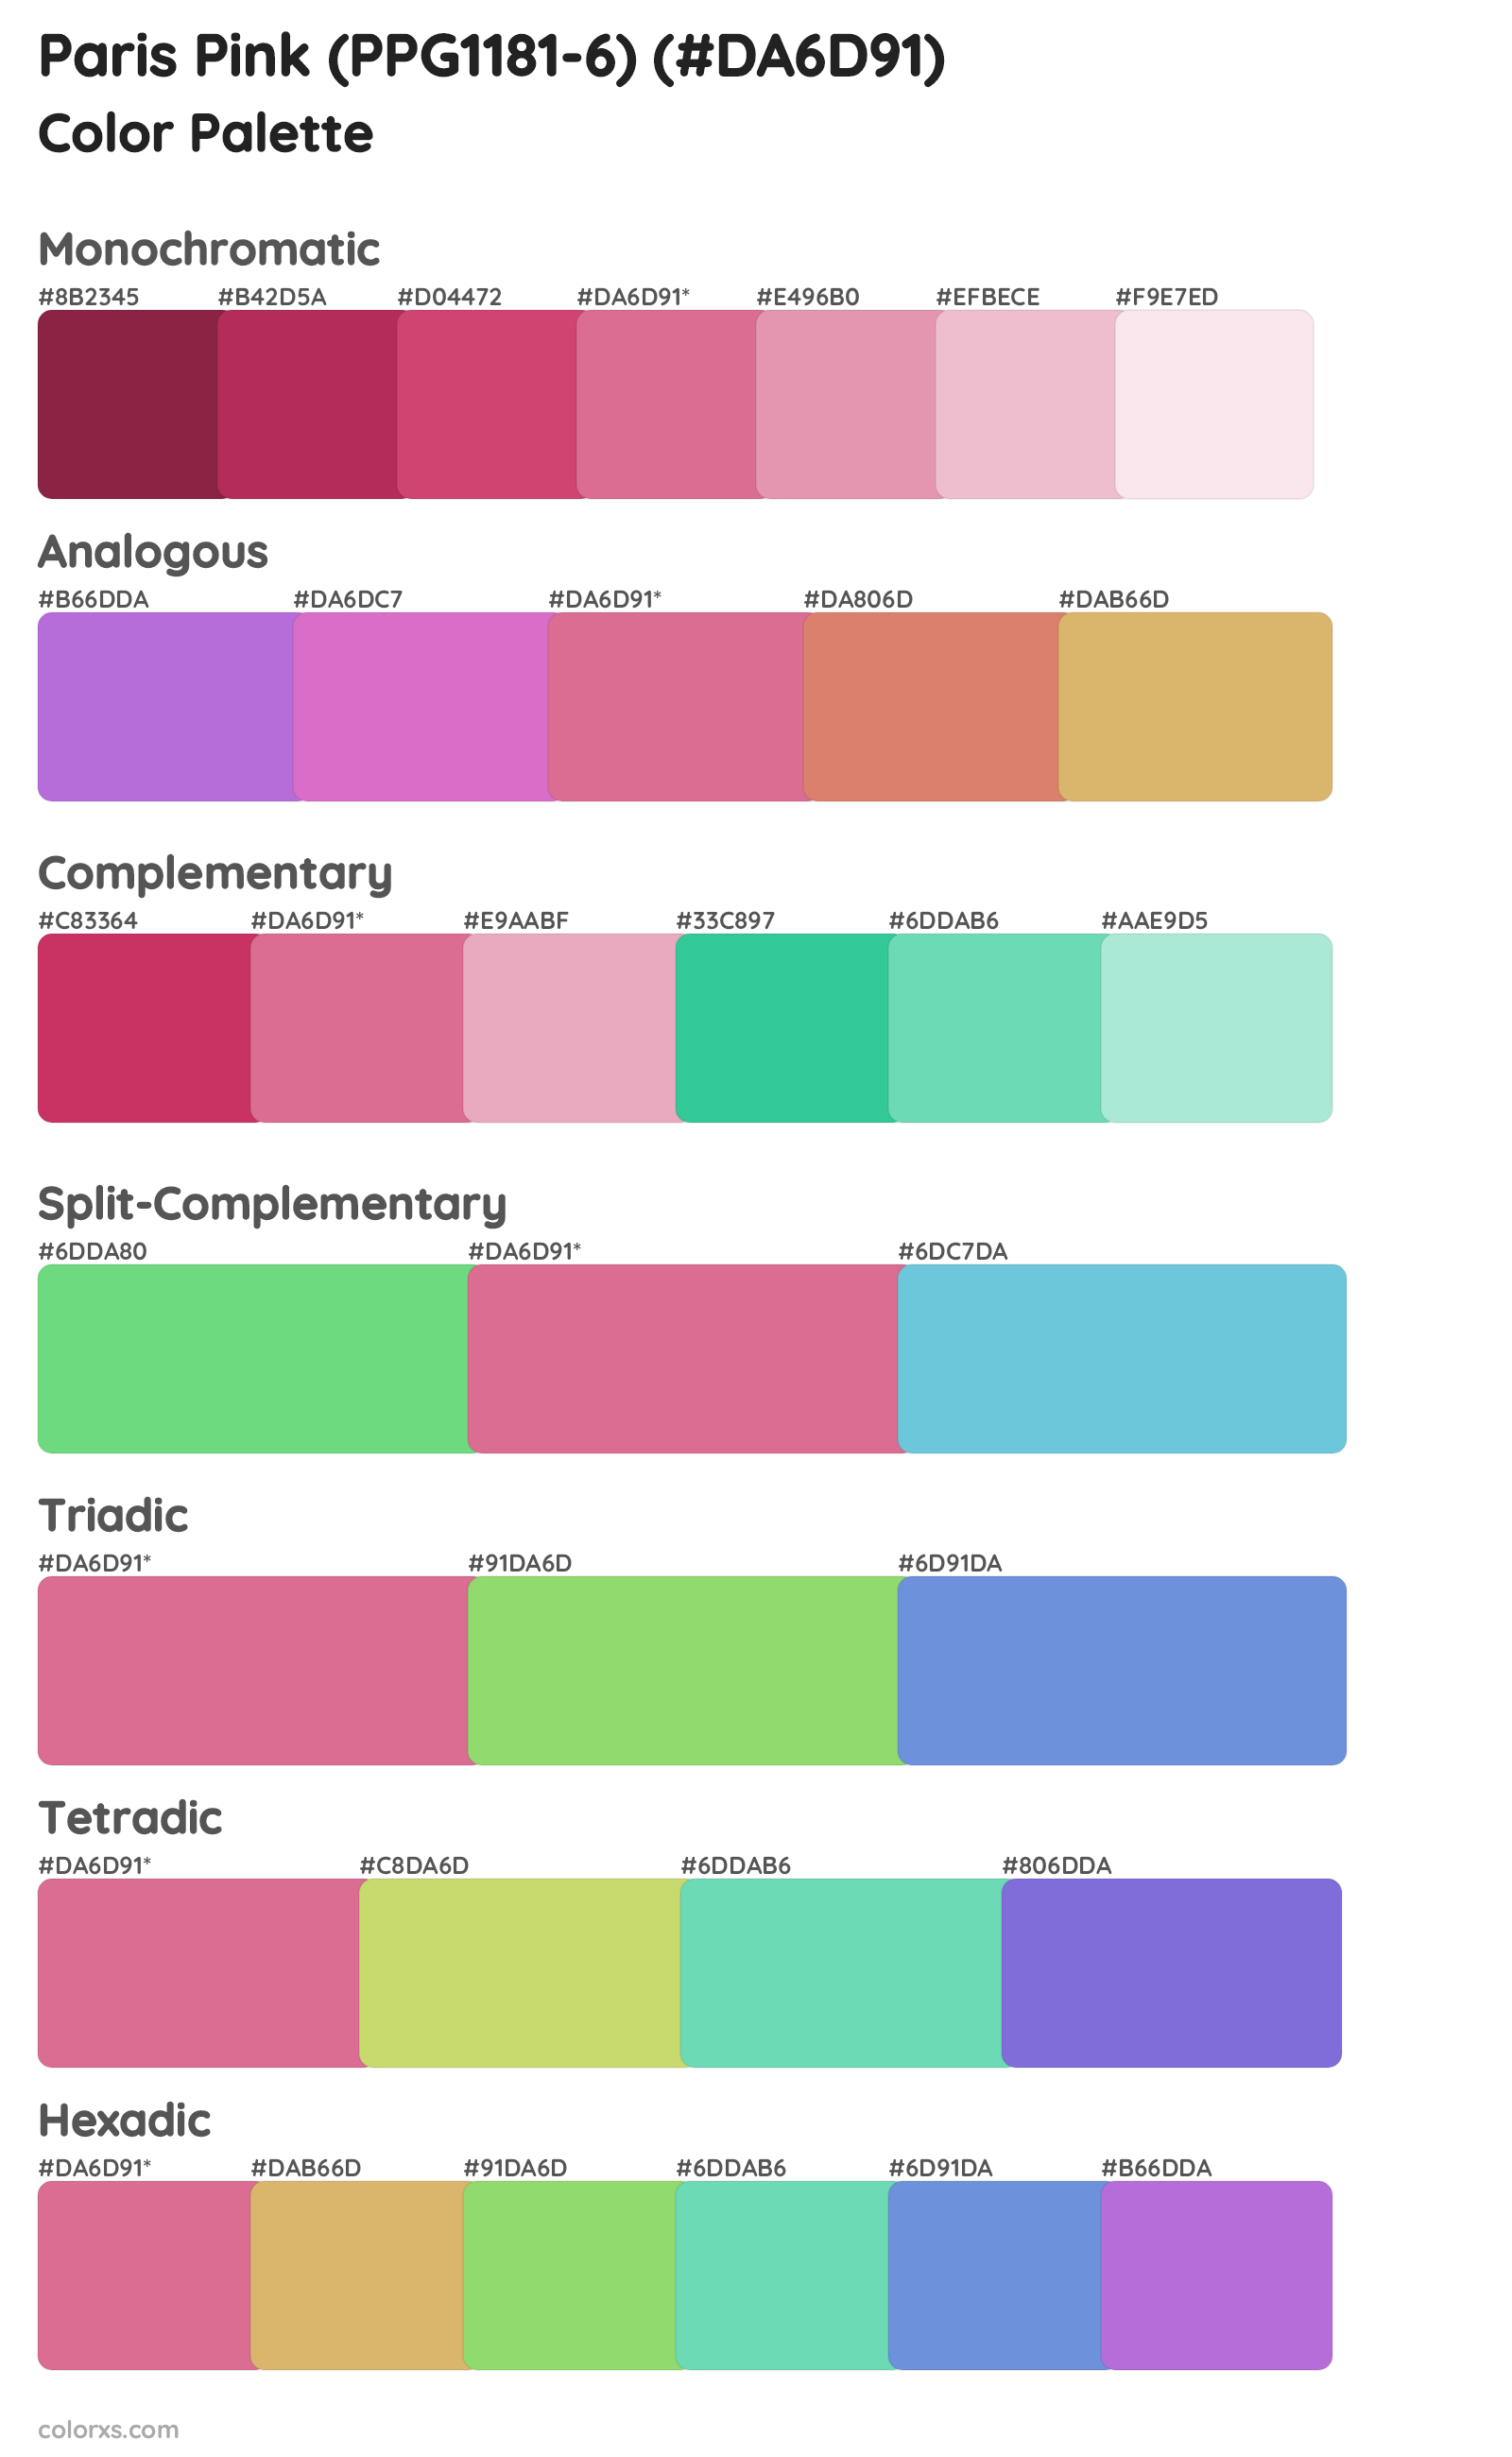 Paris Pink (PPG1181-6) Color Scheme Palettes